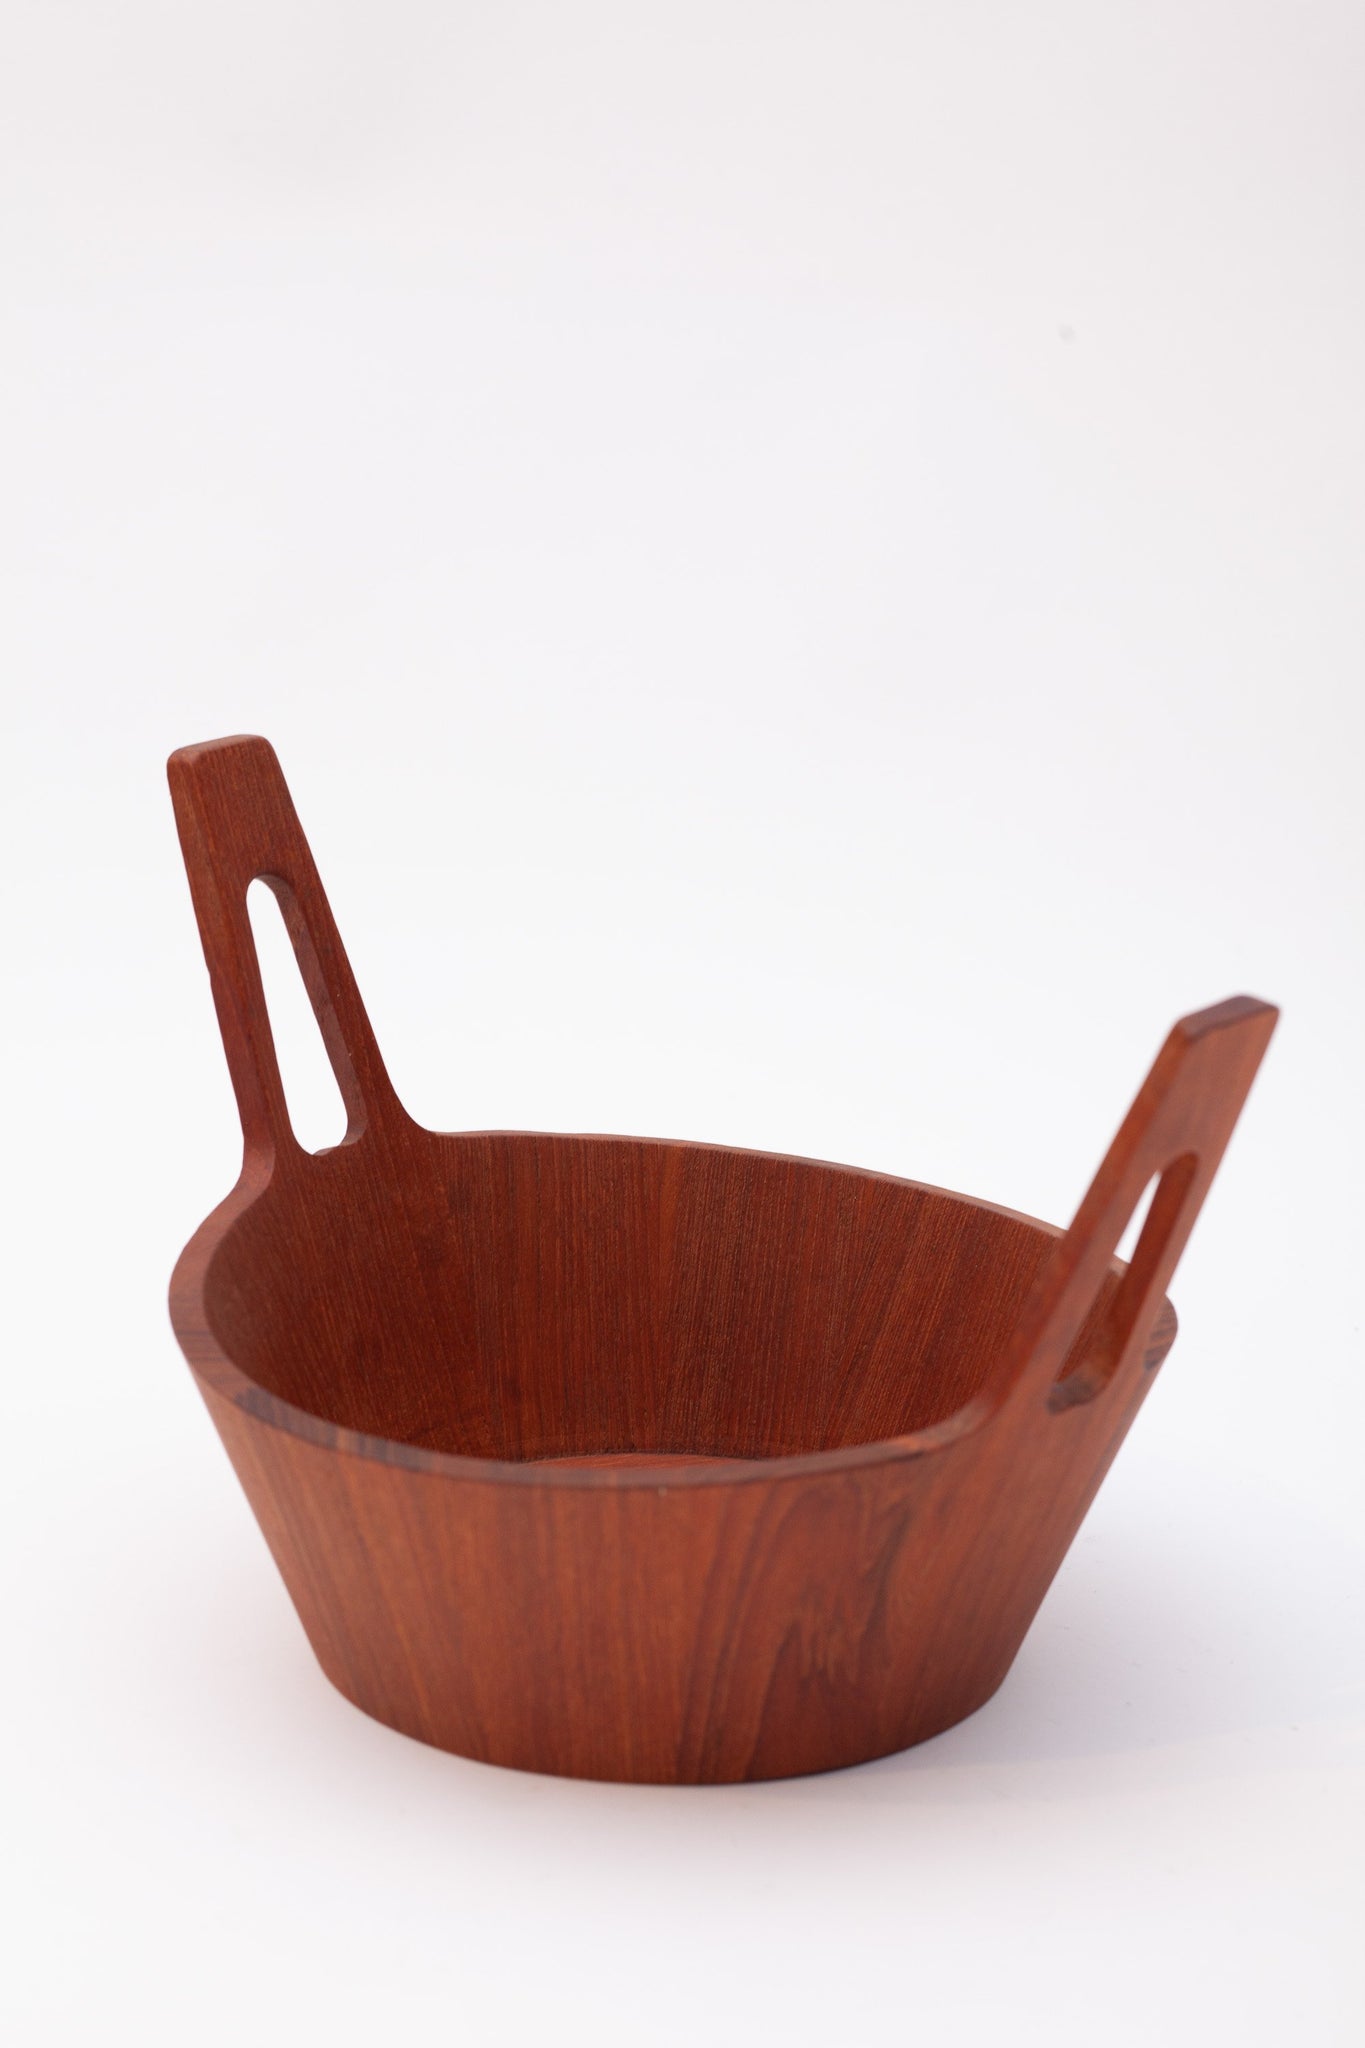 Holzschüssel von Arni Form